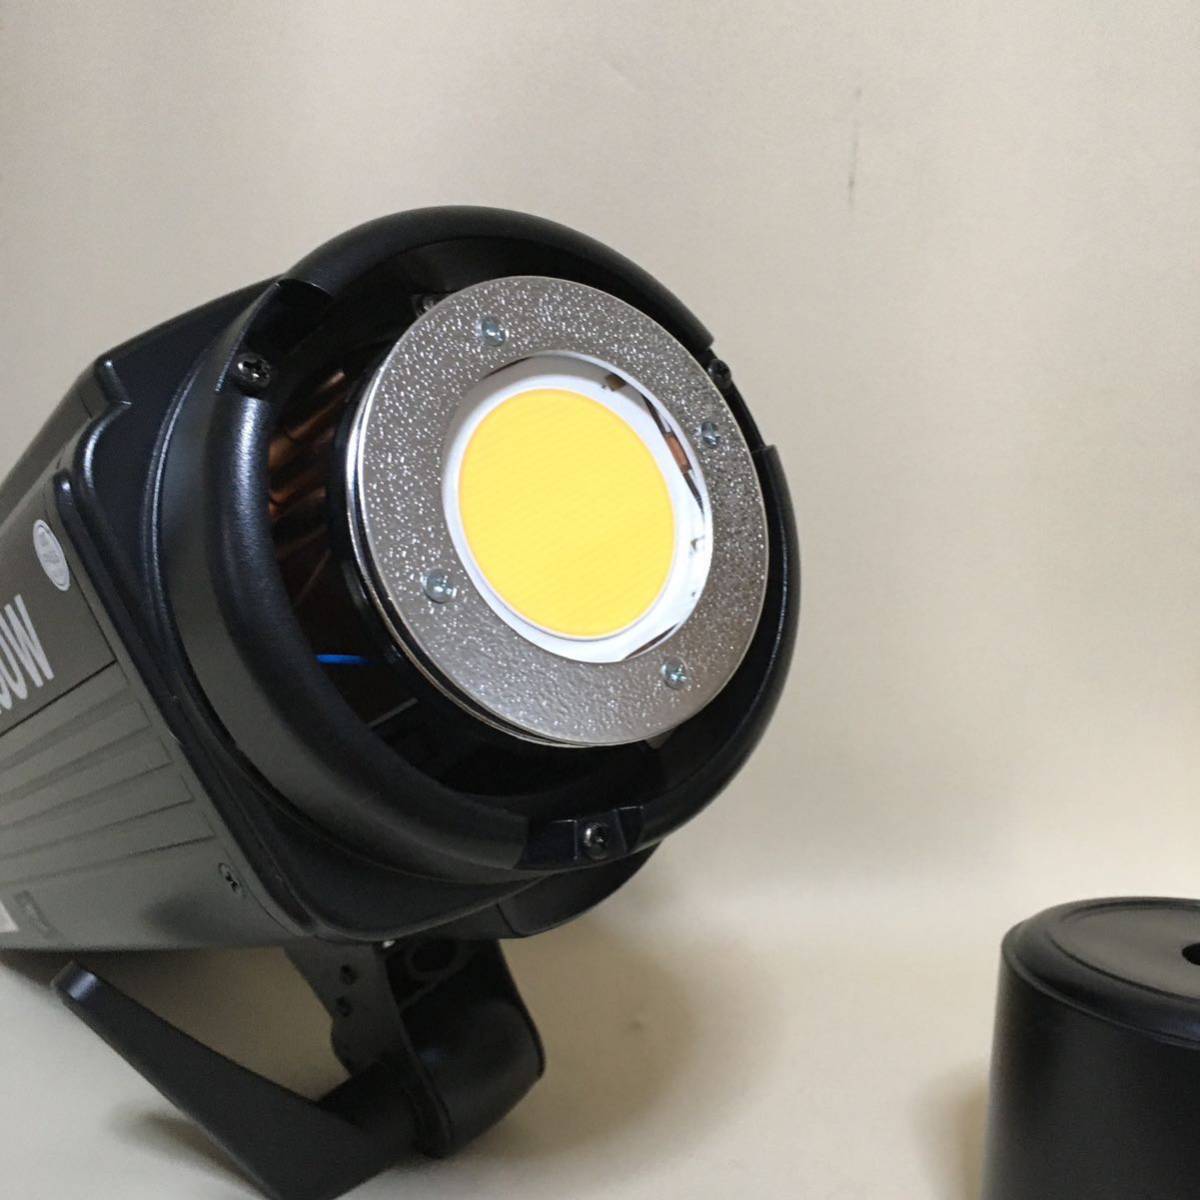 美品】【動作確認済】GODOX SL200W ビデオライト LED リモコン付-